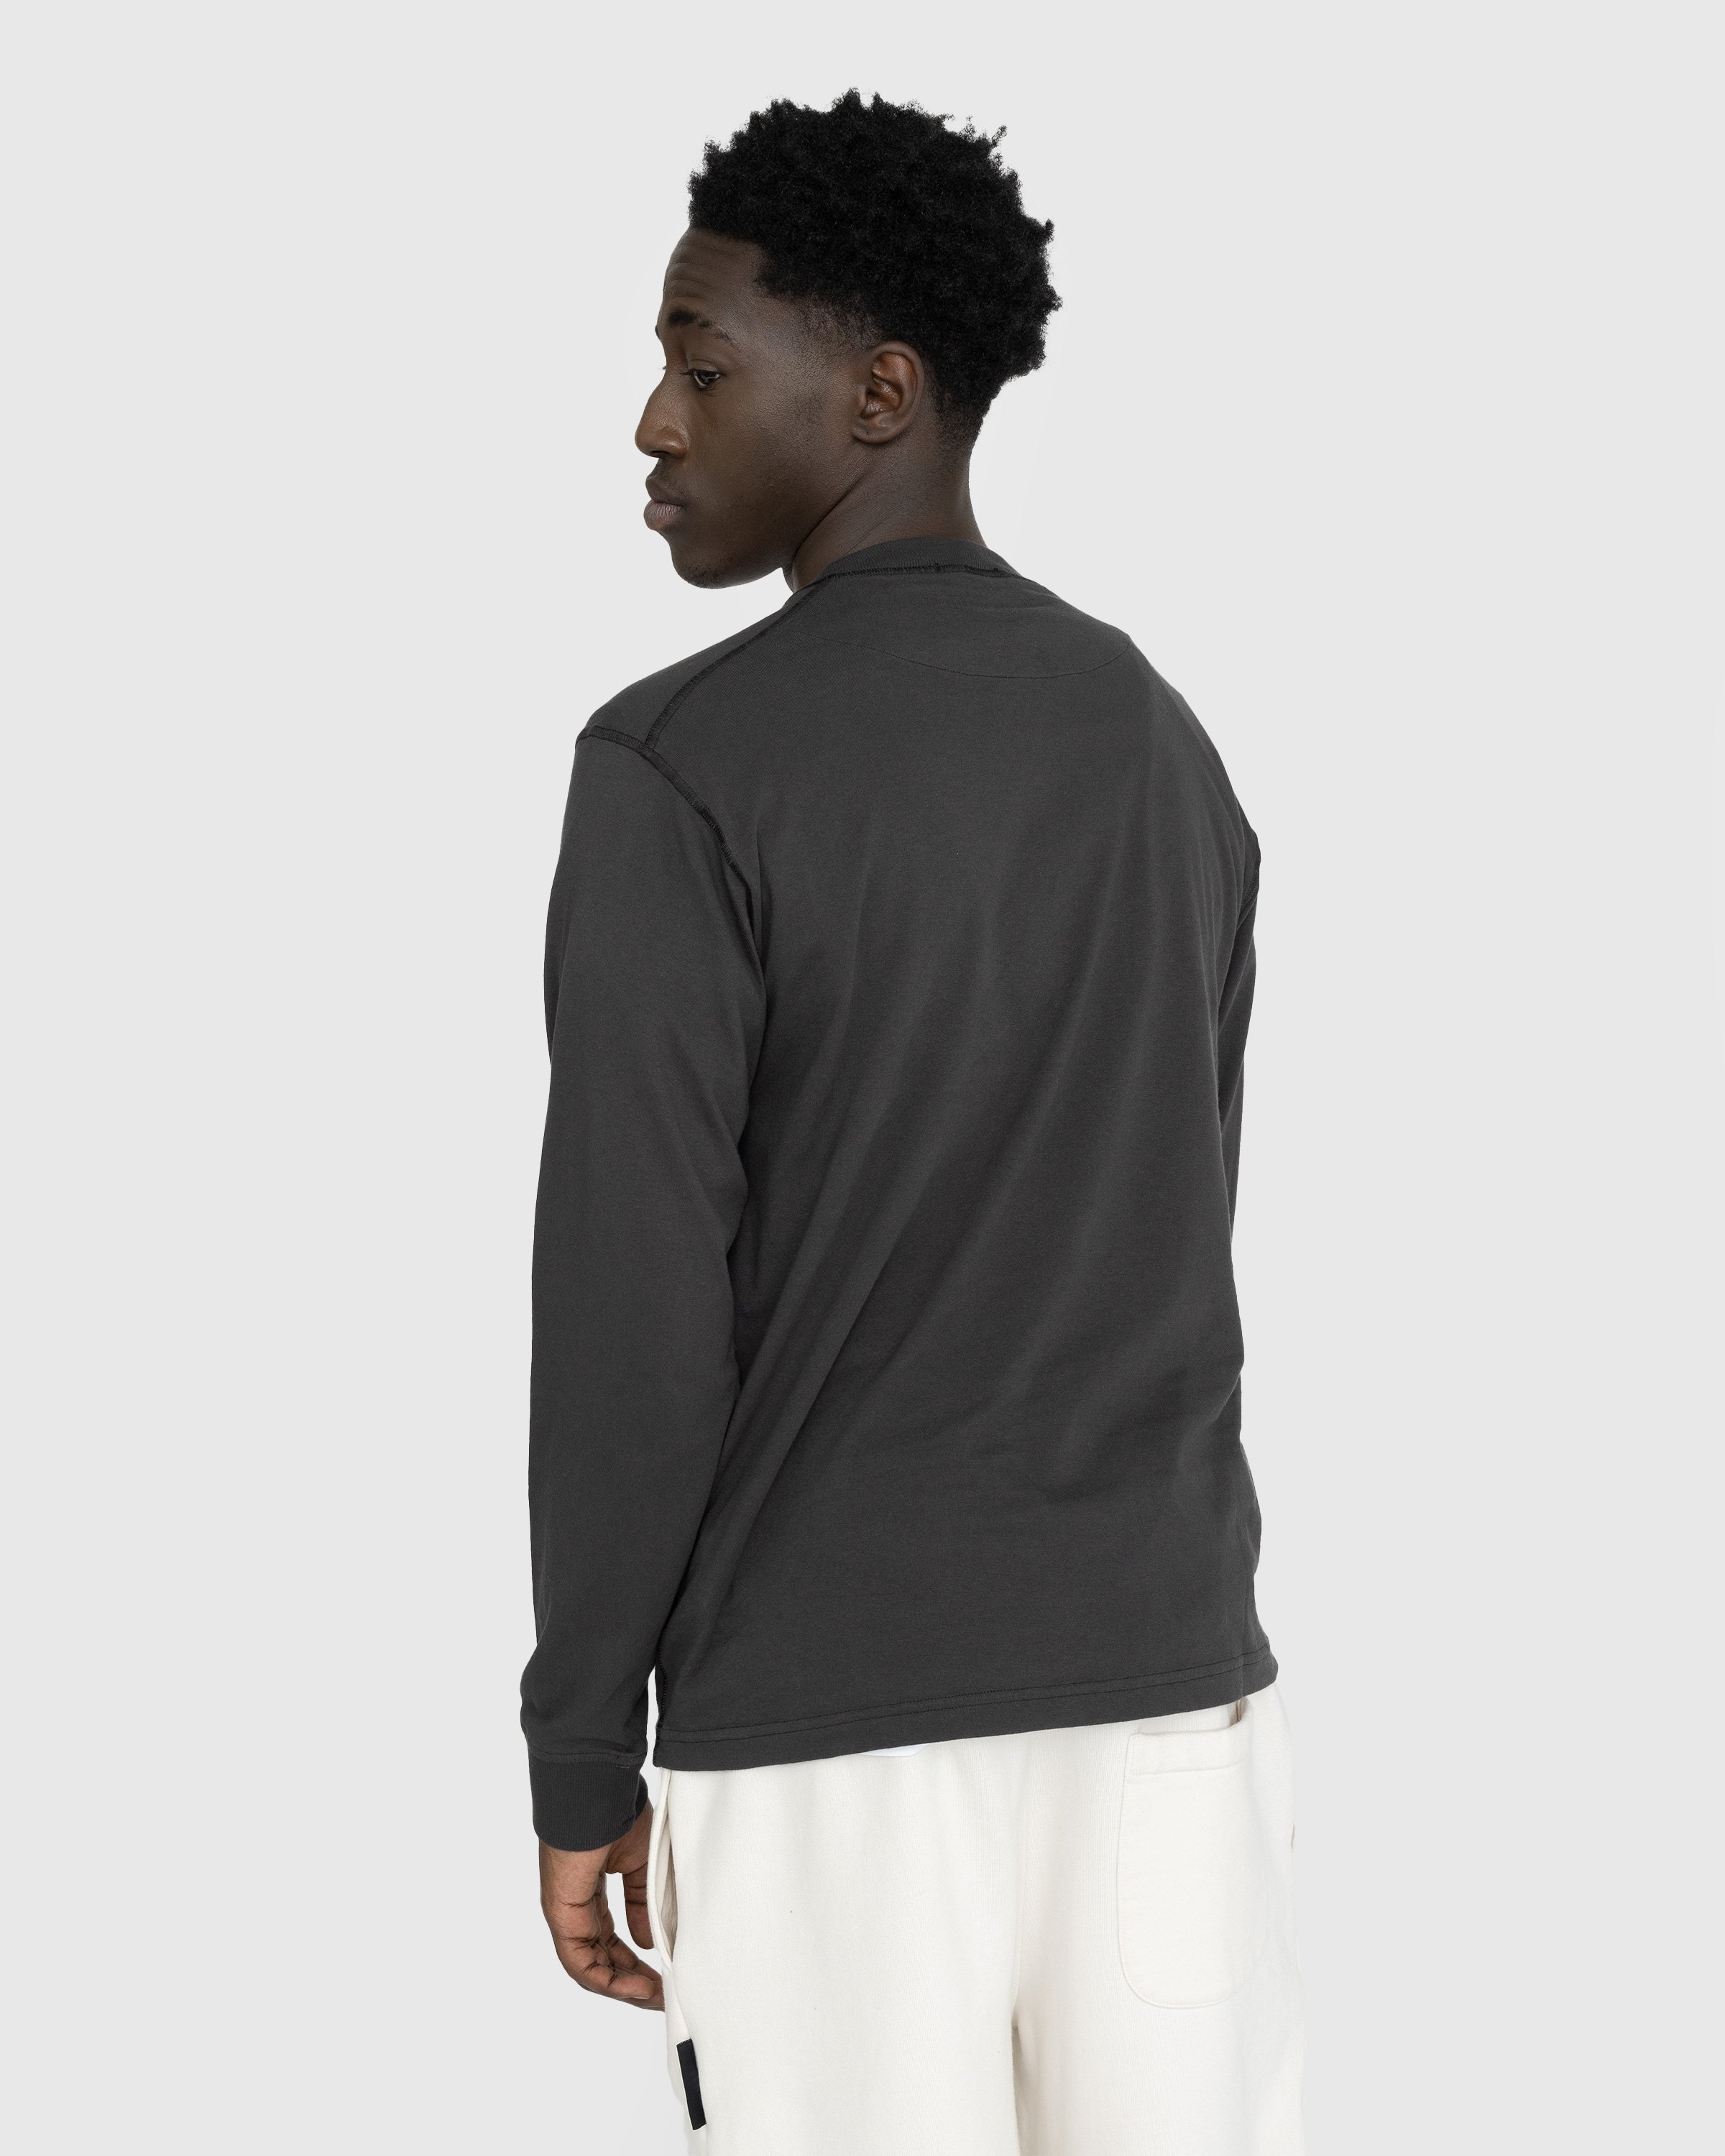 Stone Island - Fissato Longsleeve T-Shirt Charcoal - Clothing - Grey - Image 3